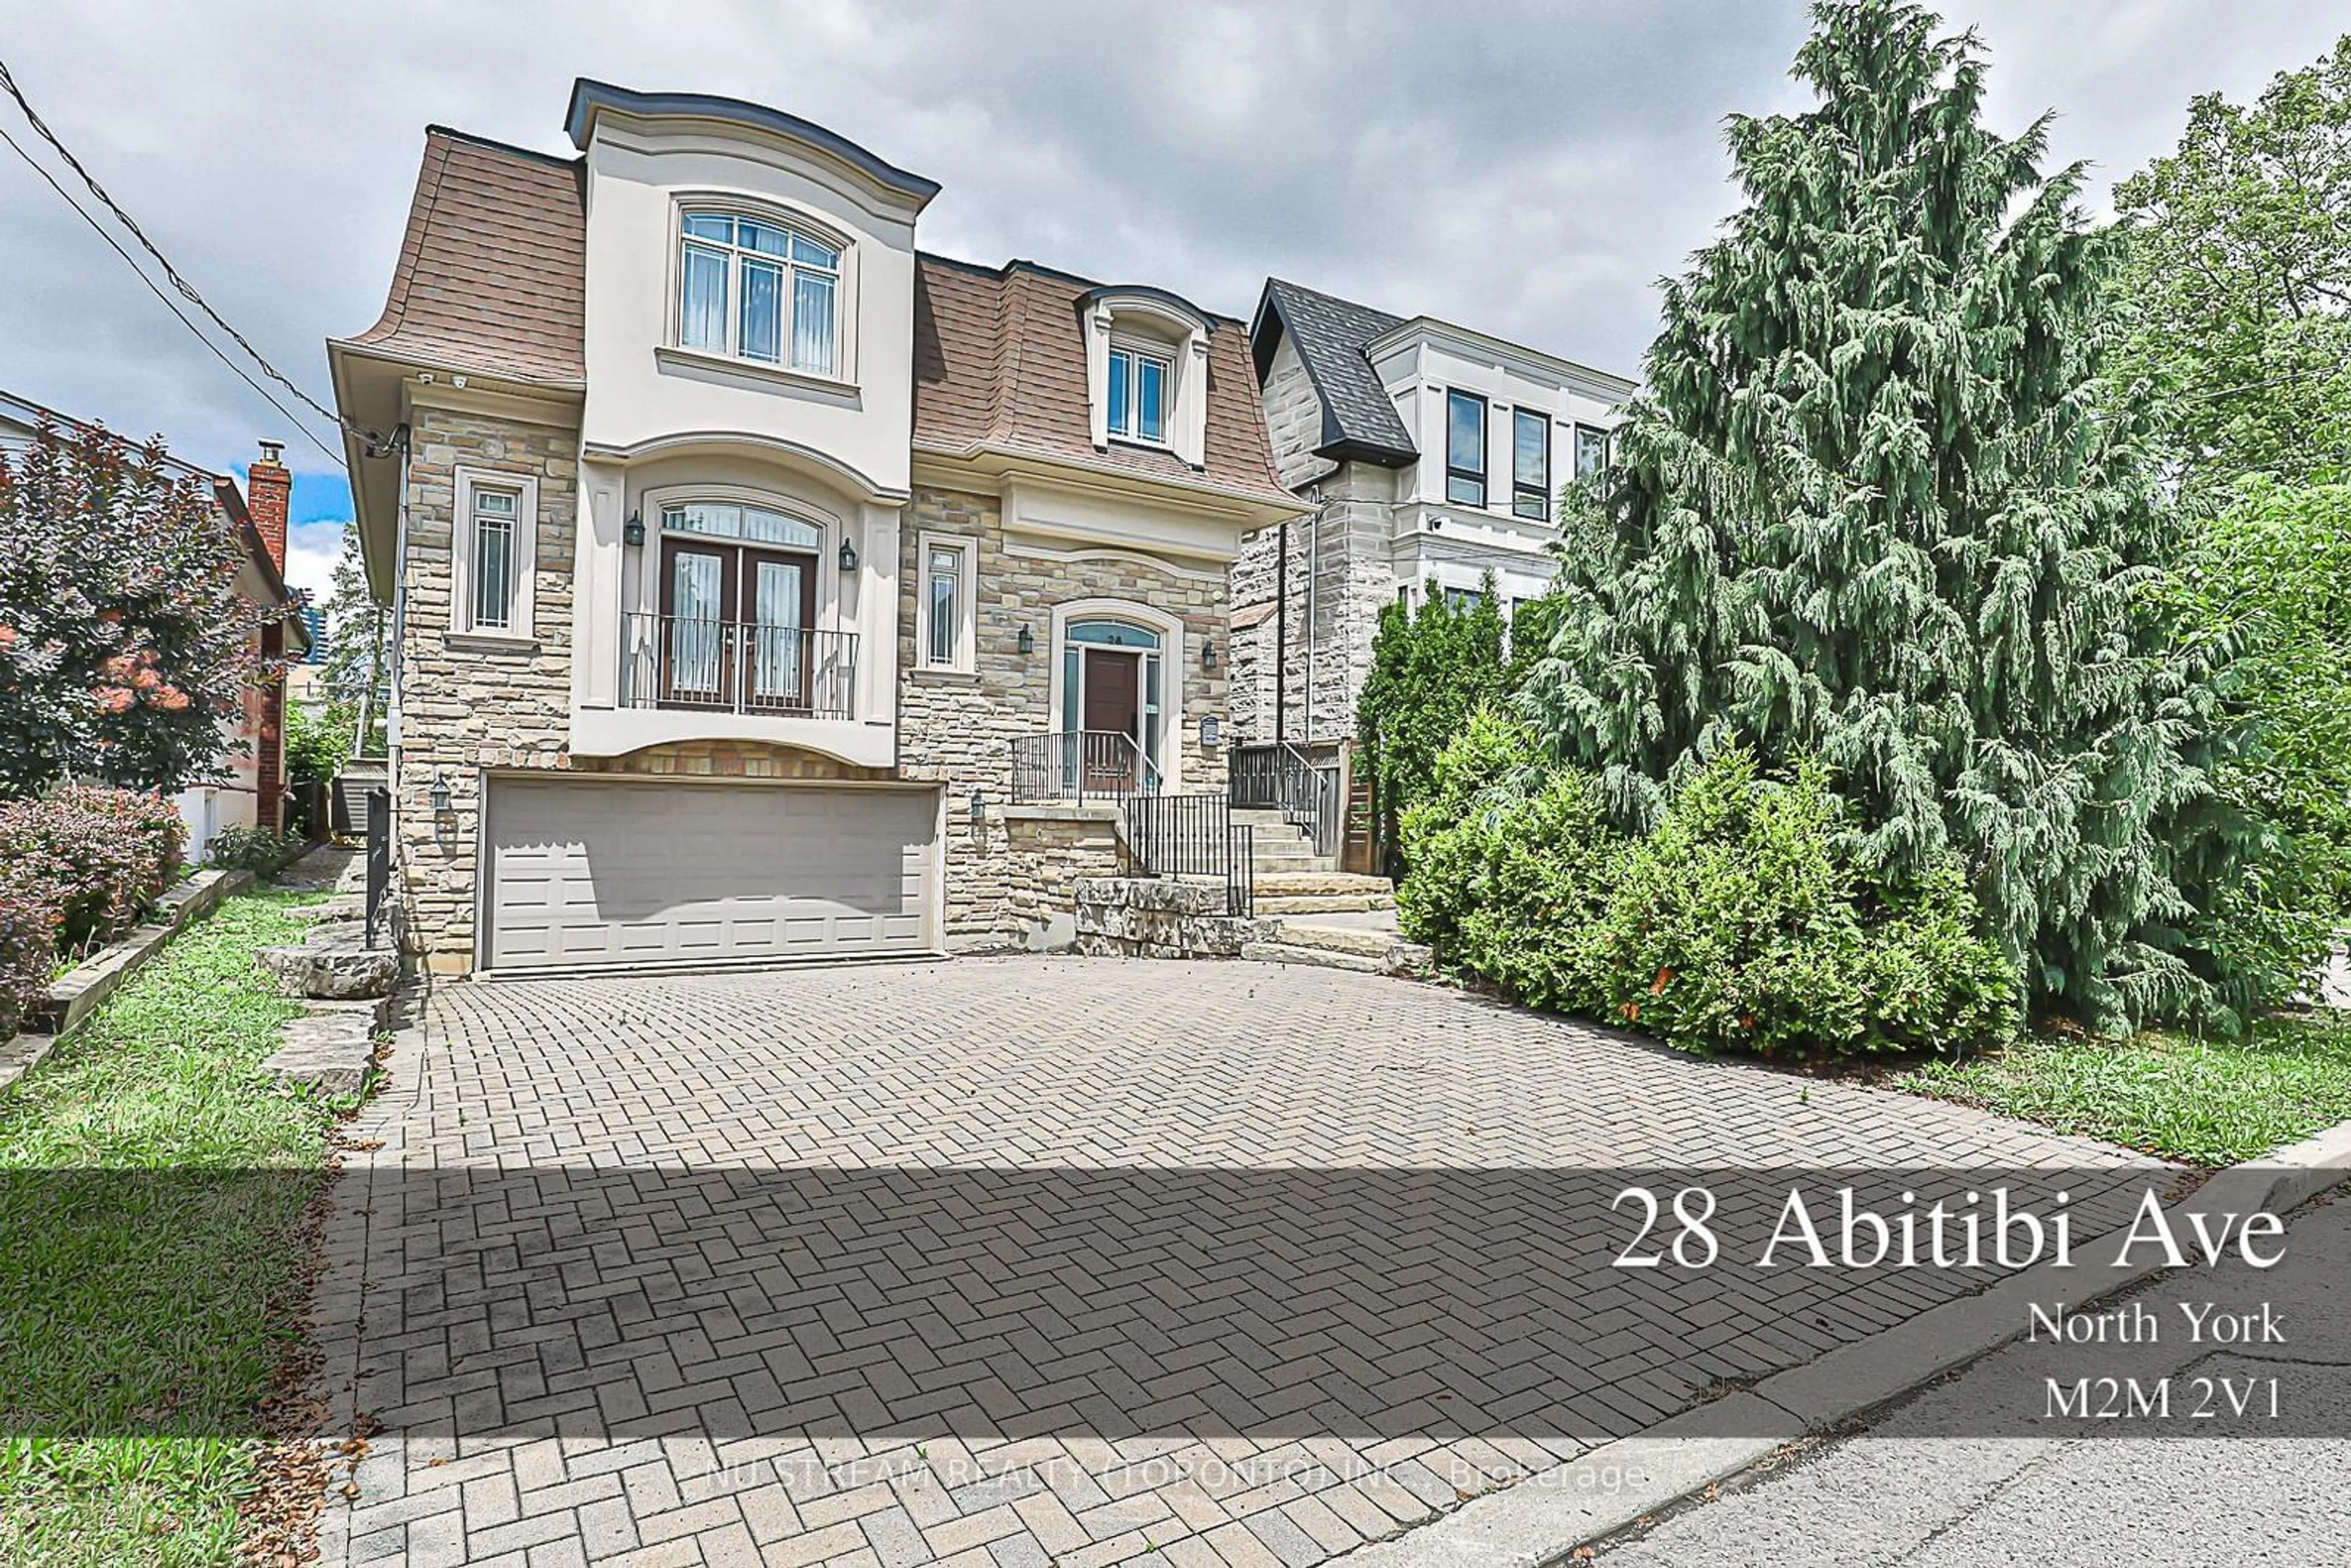 Home with brick exterior material for 28 Abitibi Ave, Toronto Ontario M2M 2V1